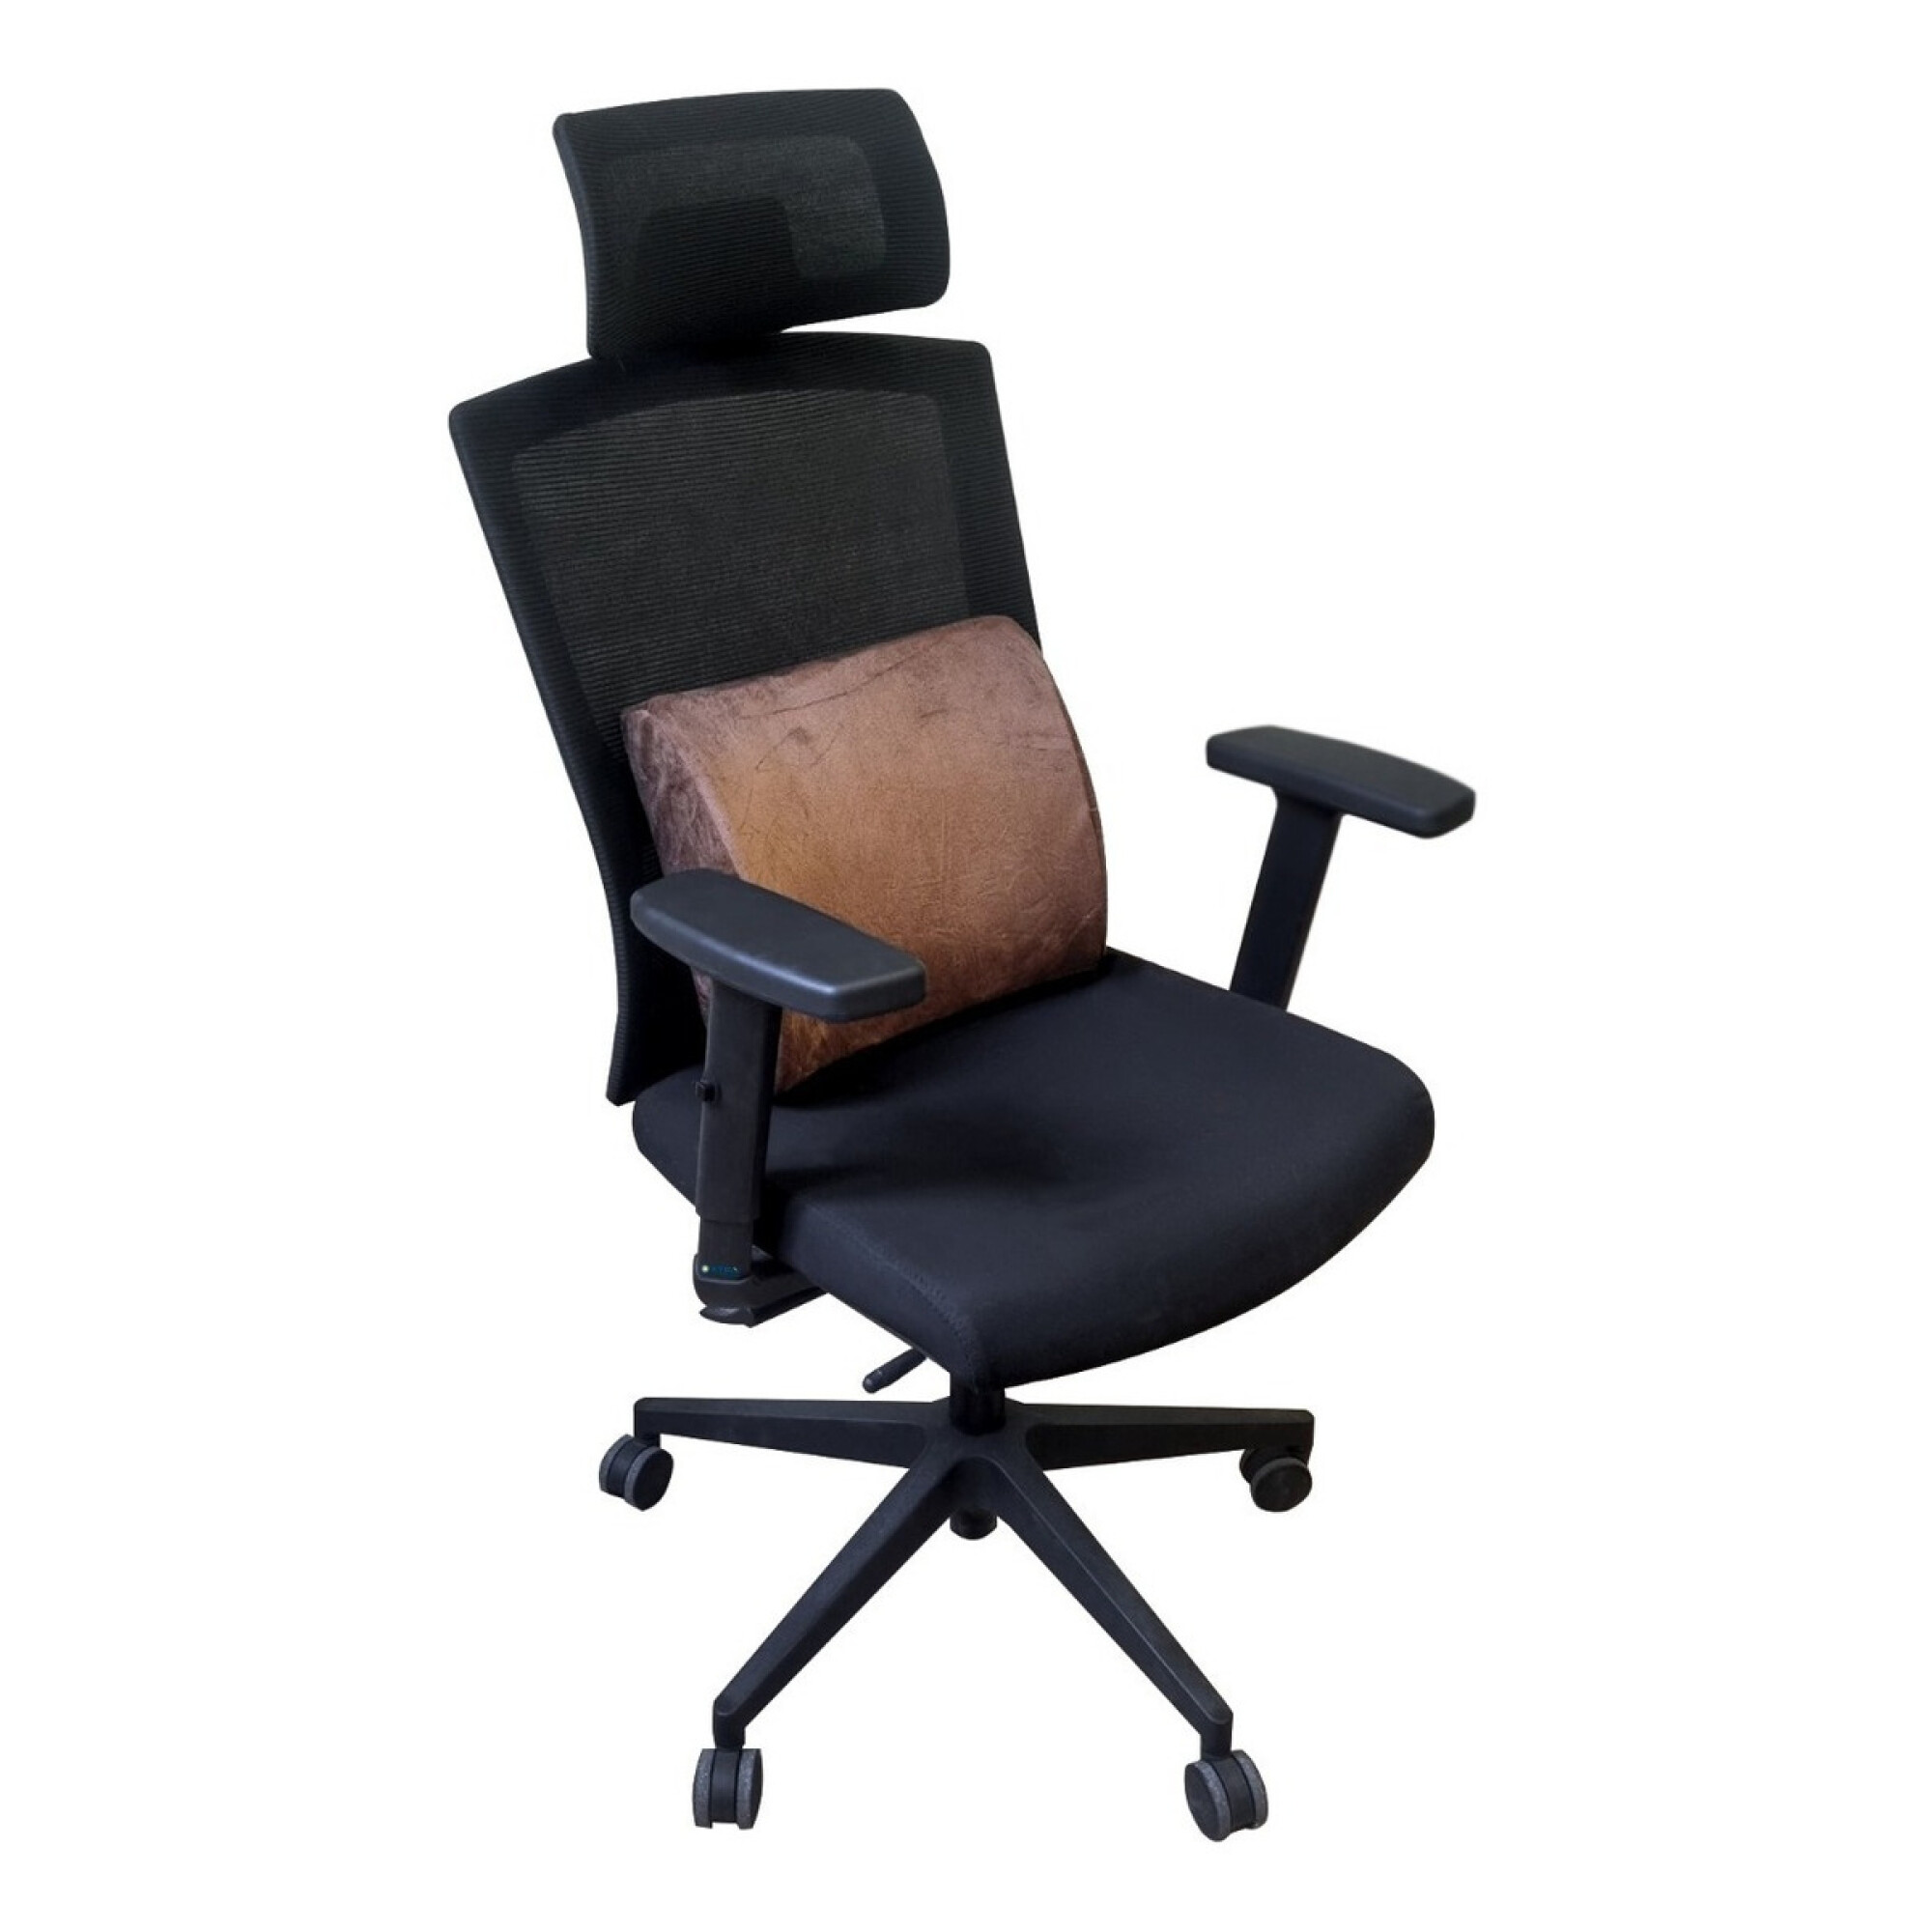 Respaldo soporte lumbar corrector postura silla